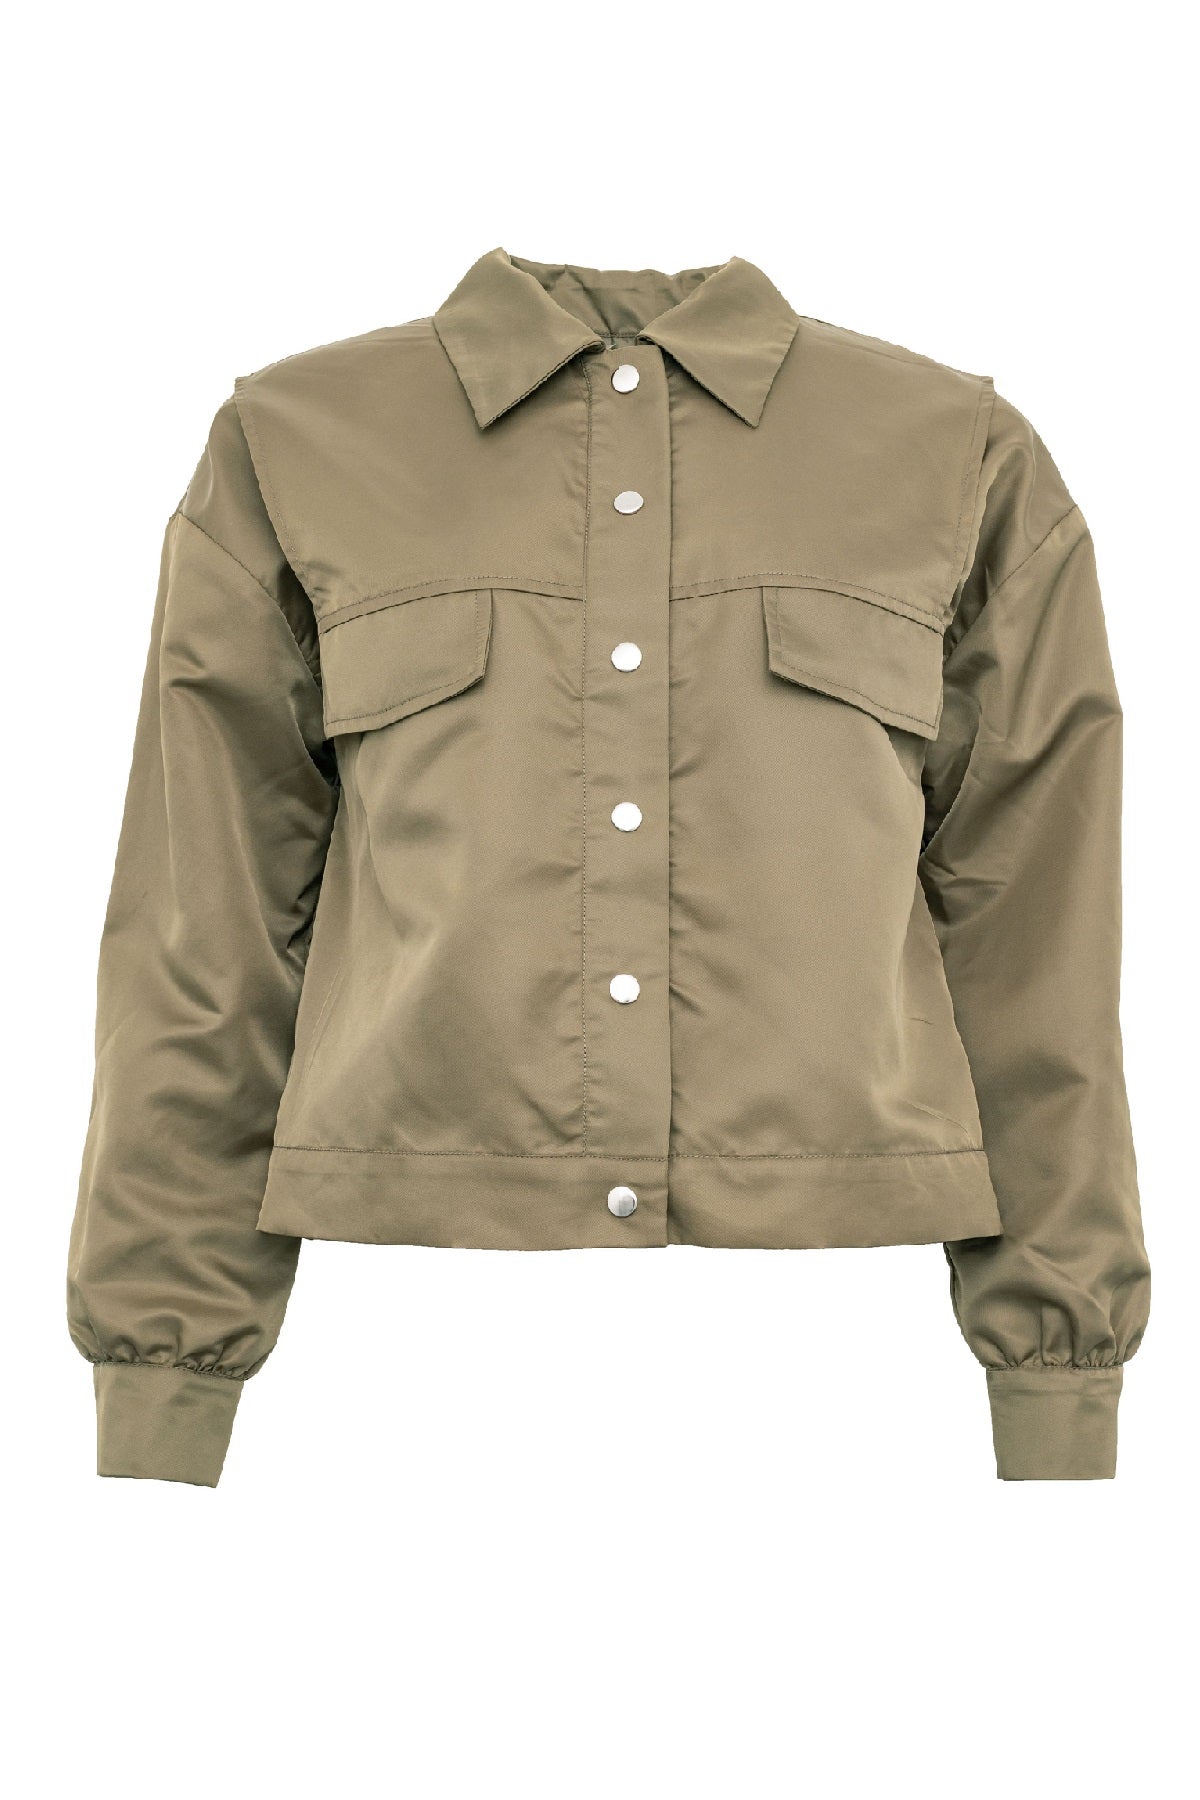 Costamani Jungle jacket, Army